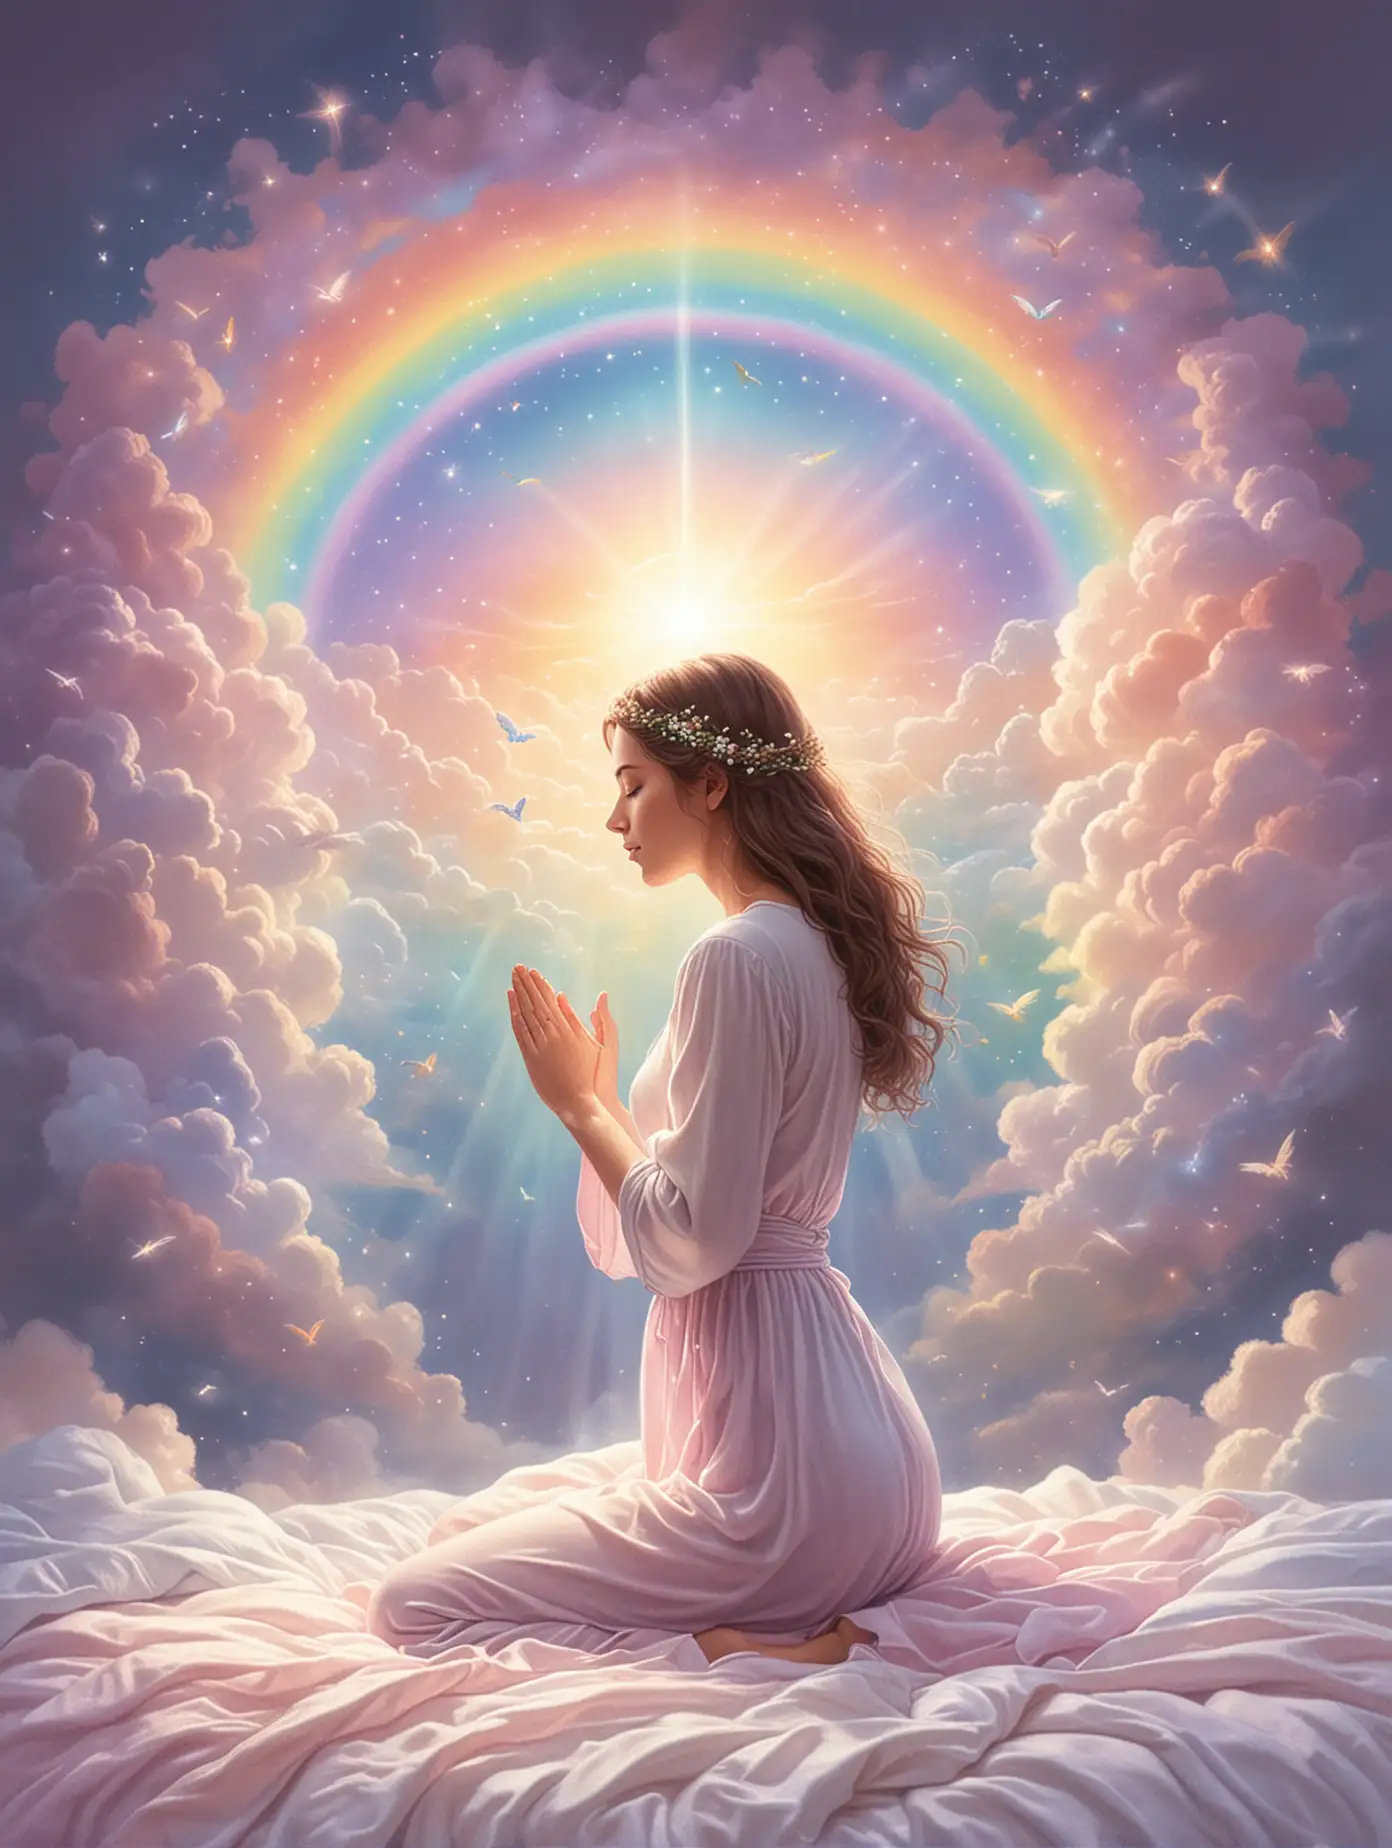 Peaceful Prayer Before Slumber in Pastel Rainbow Palette